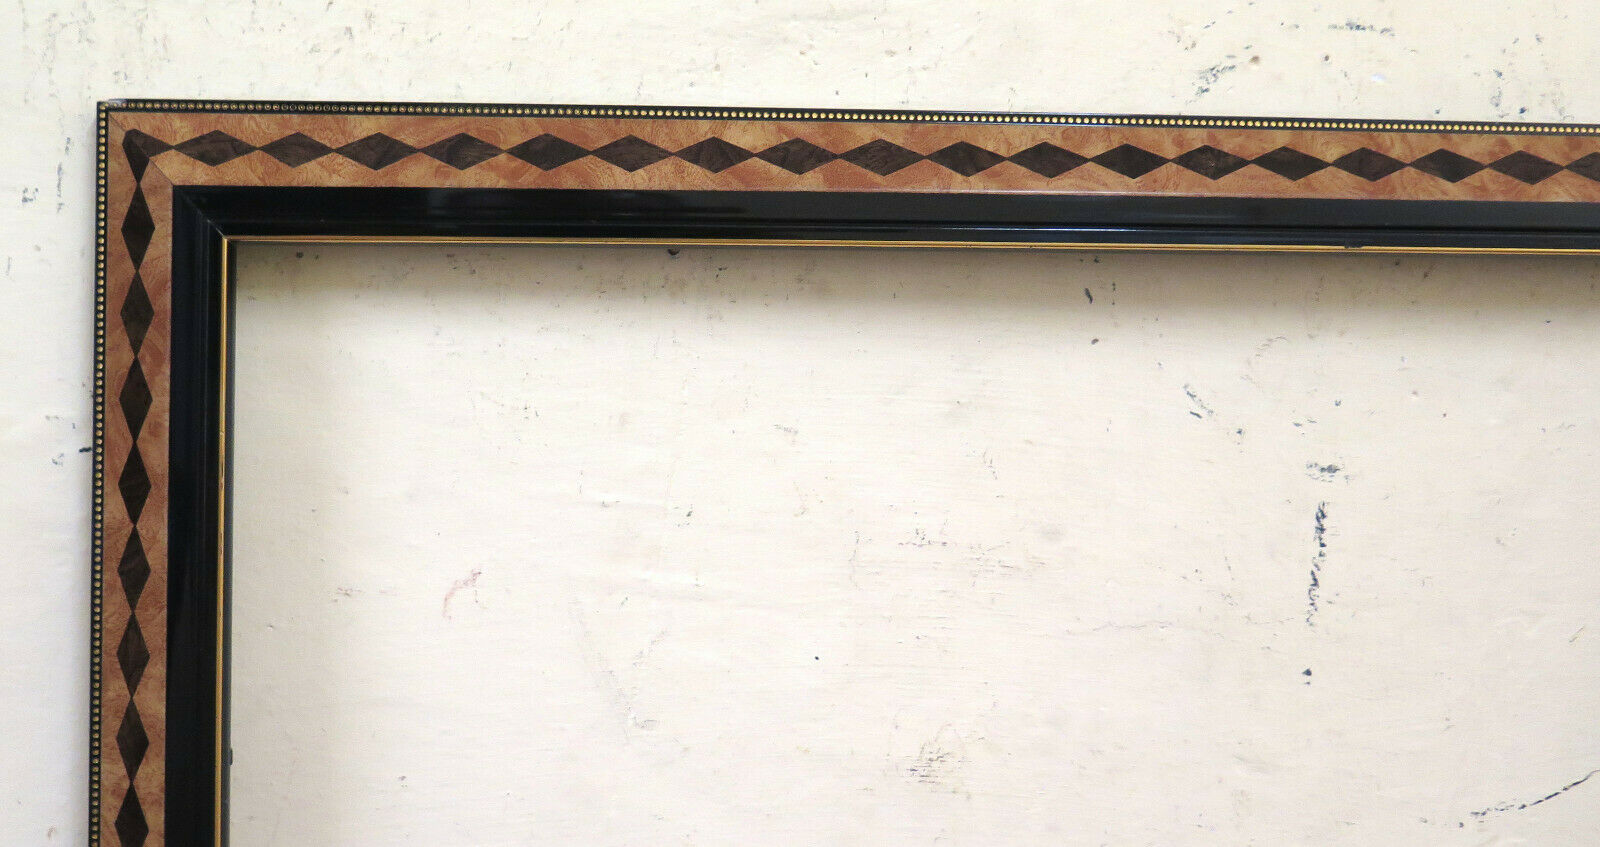 44x66 cm CORNICE DI LEGNO VINTAGE ANNI 70 CON DISEGNO A ROMBI PER QUAD –  Belbello Antiques